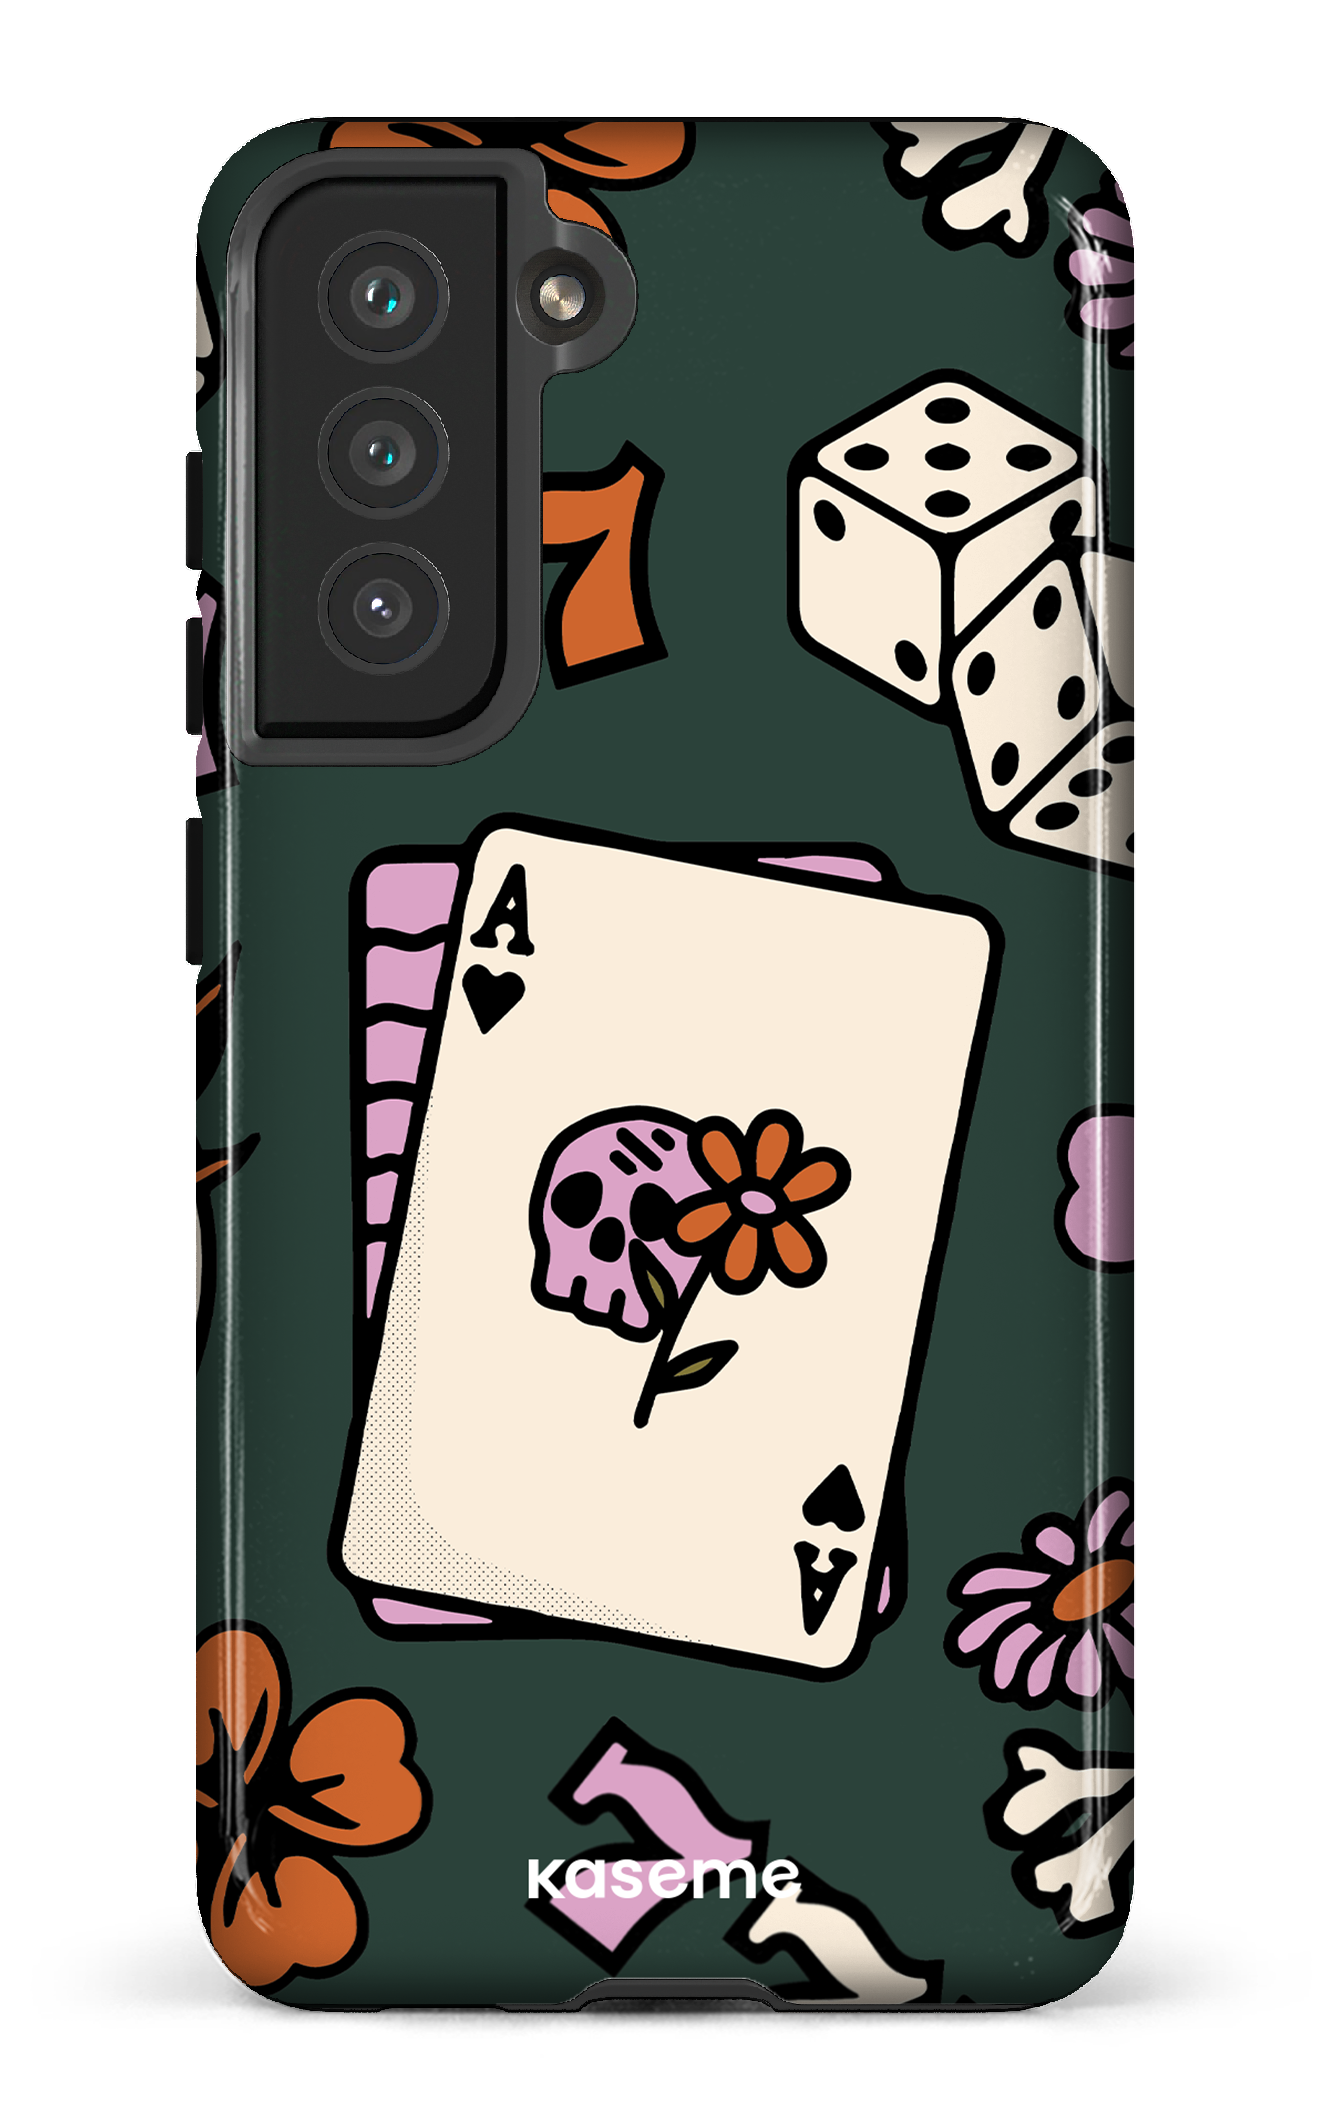 Poker Face - Galaxy S21 FE